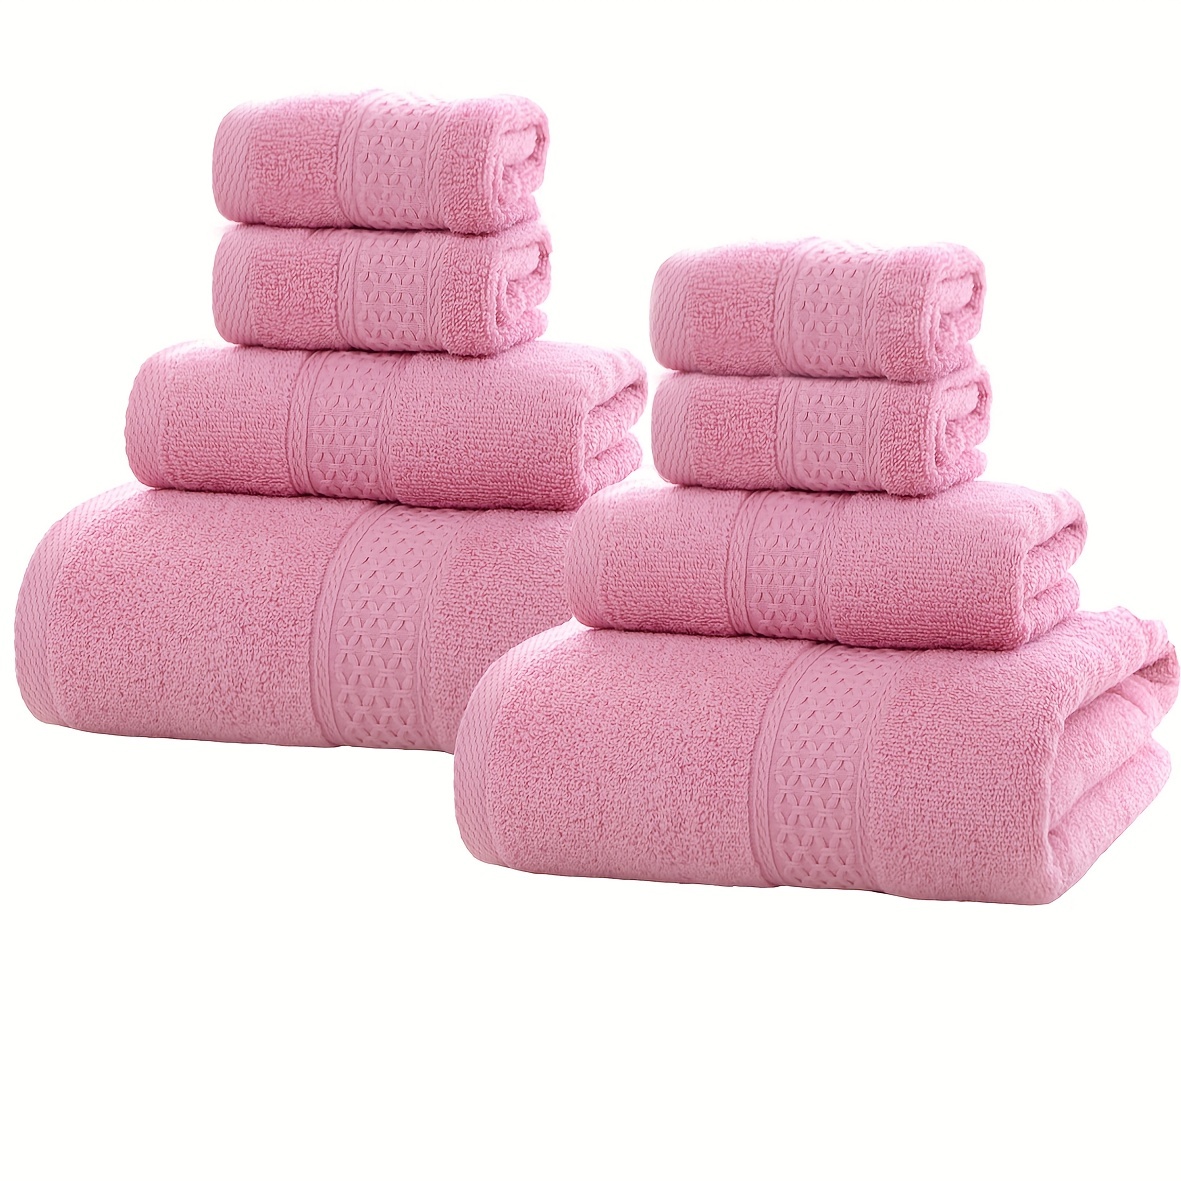 Toallas de mano esponjosas de algodón puro de alta calidad de 13 x 13  pulgadas, toallas negras, juego de 6 toallas de baño ultrasuaves y  altamente